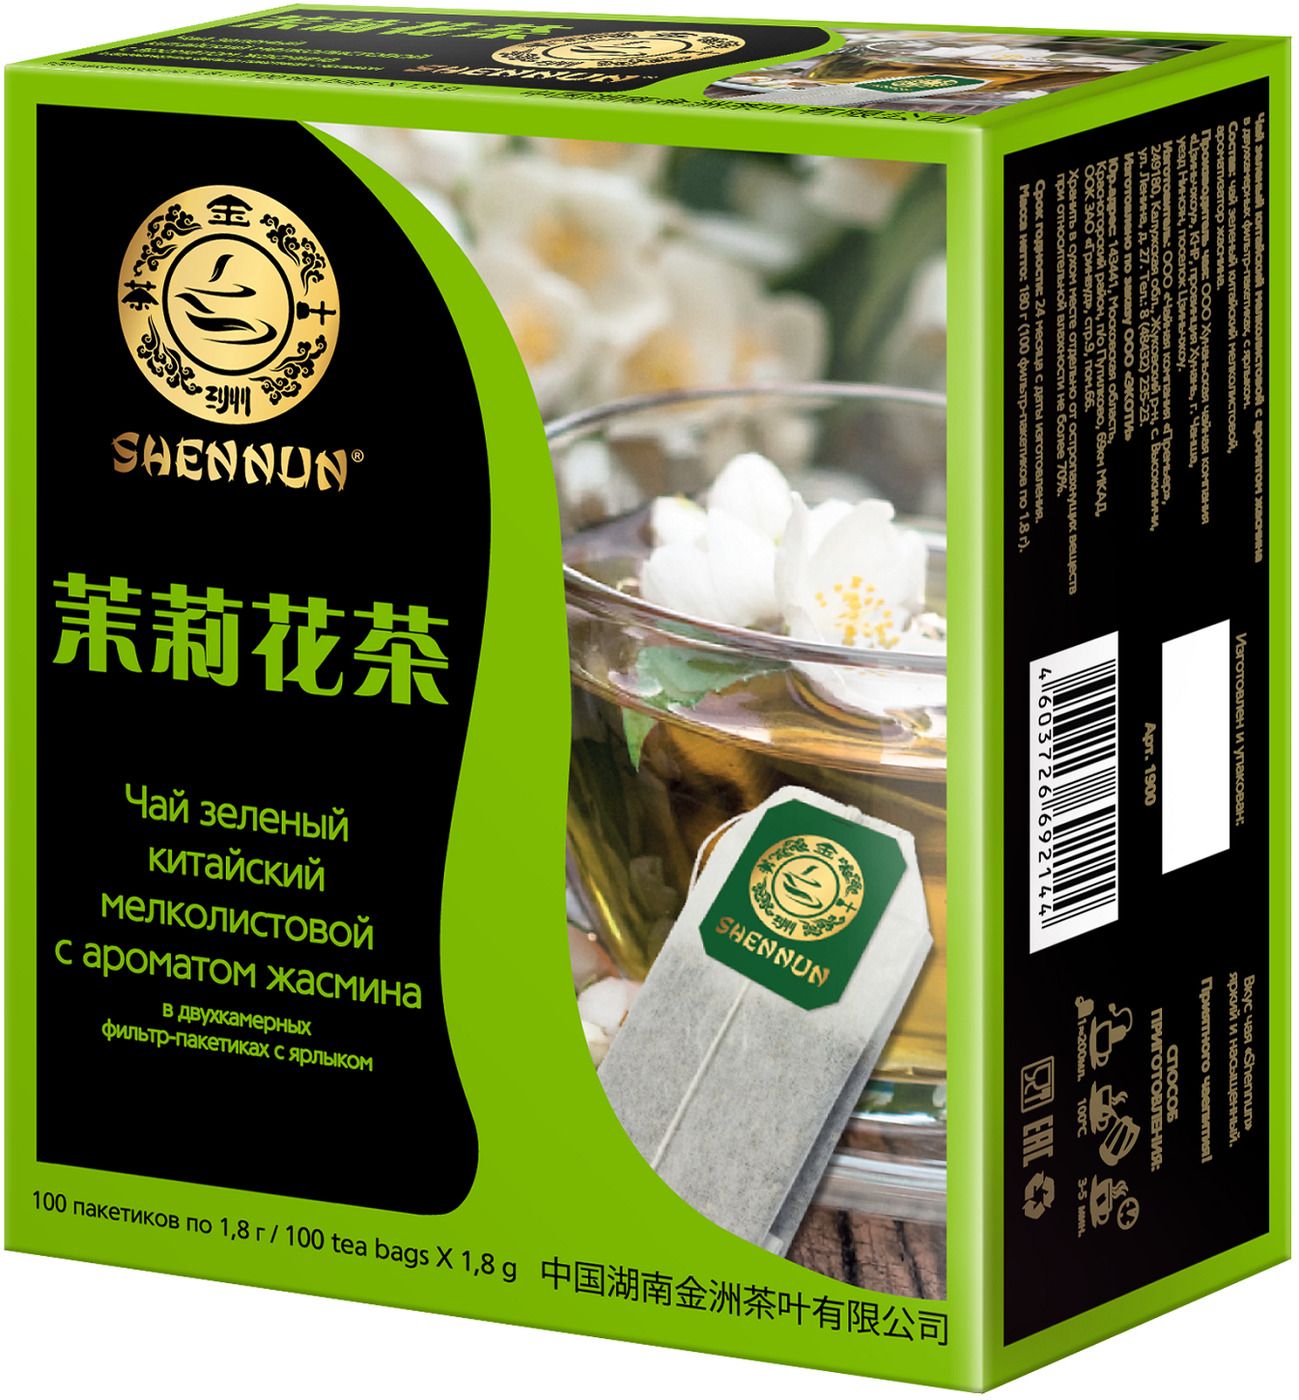 Жасминовый чай купить. Чай зеленый Shennun. Чай зеленый Shennun, 100 г. Зеленый чай жасмина с араоматам. Чай зеленый Shennun с жасмином в пирамидках.